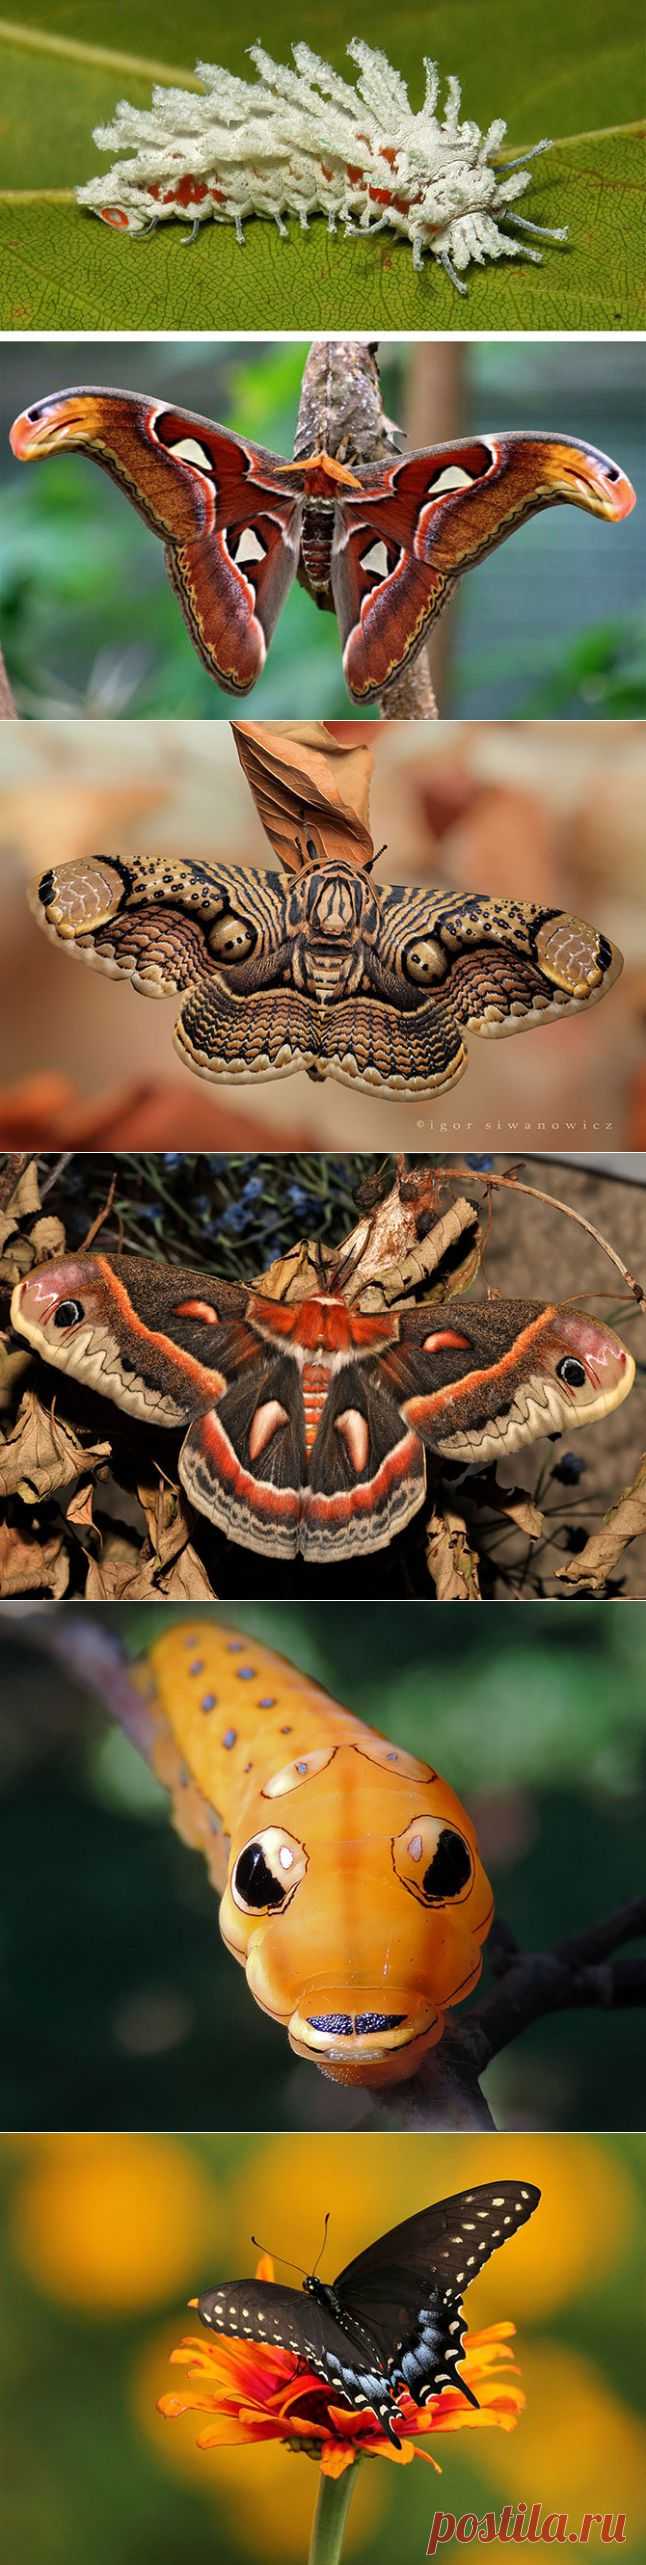 (+1) тема - Удивительное превращение гусениц в бабочек | НАУКА И ЖИЗНЬ